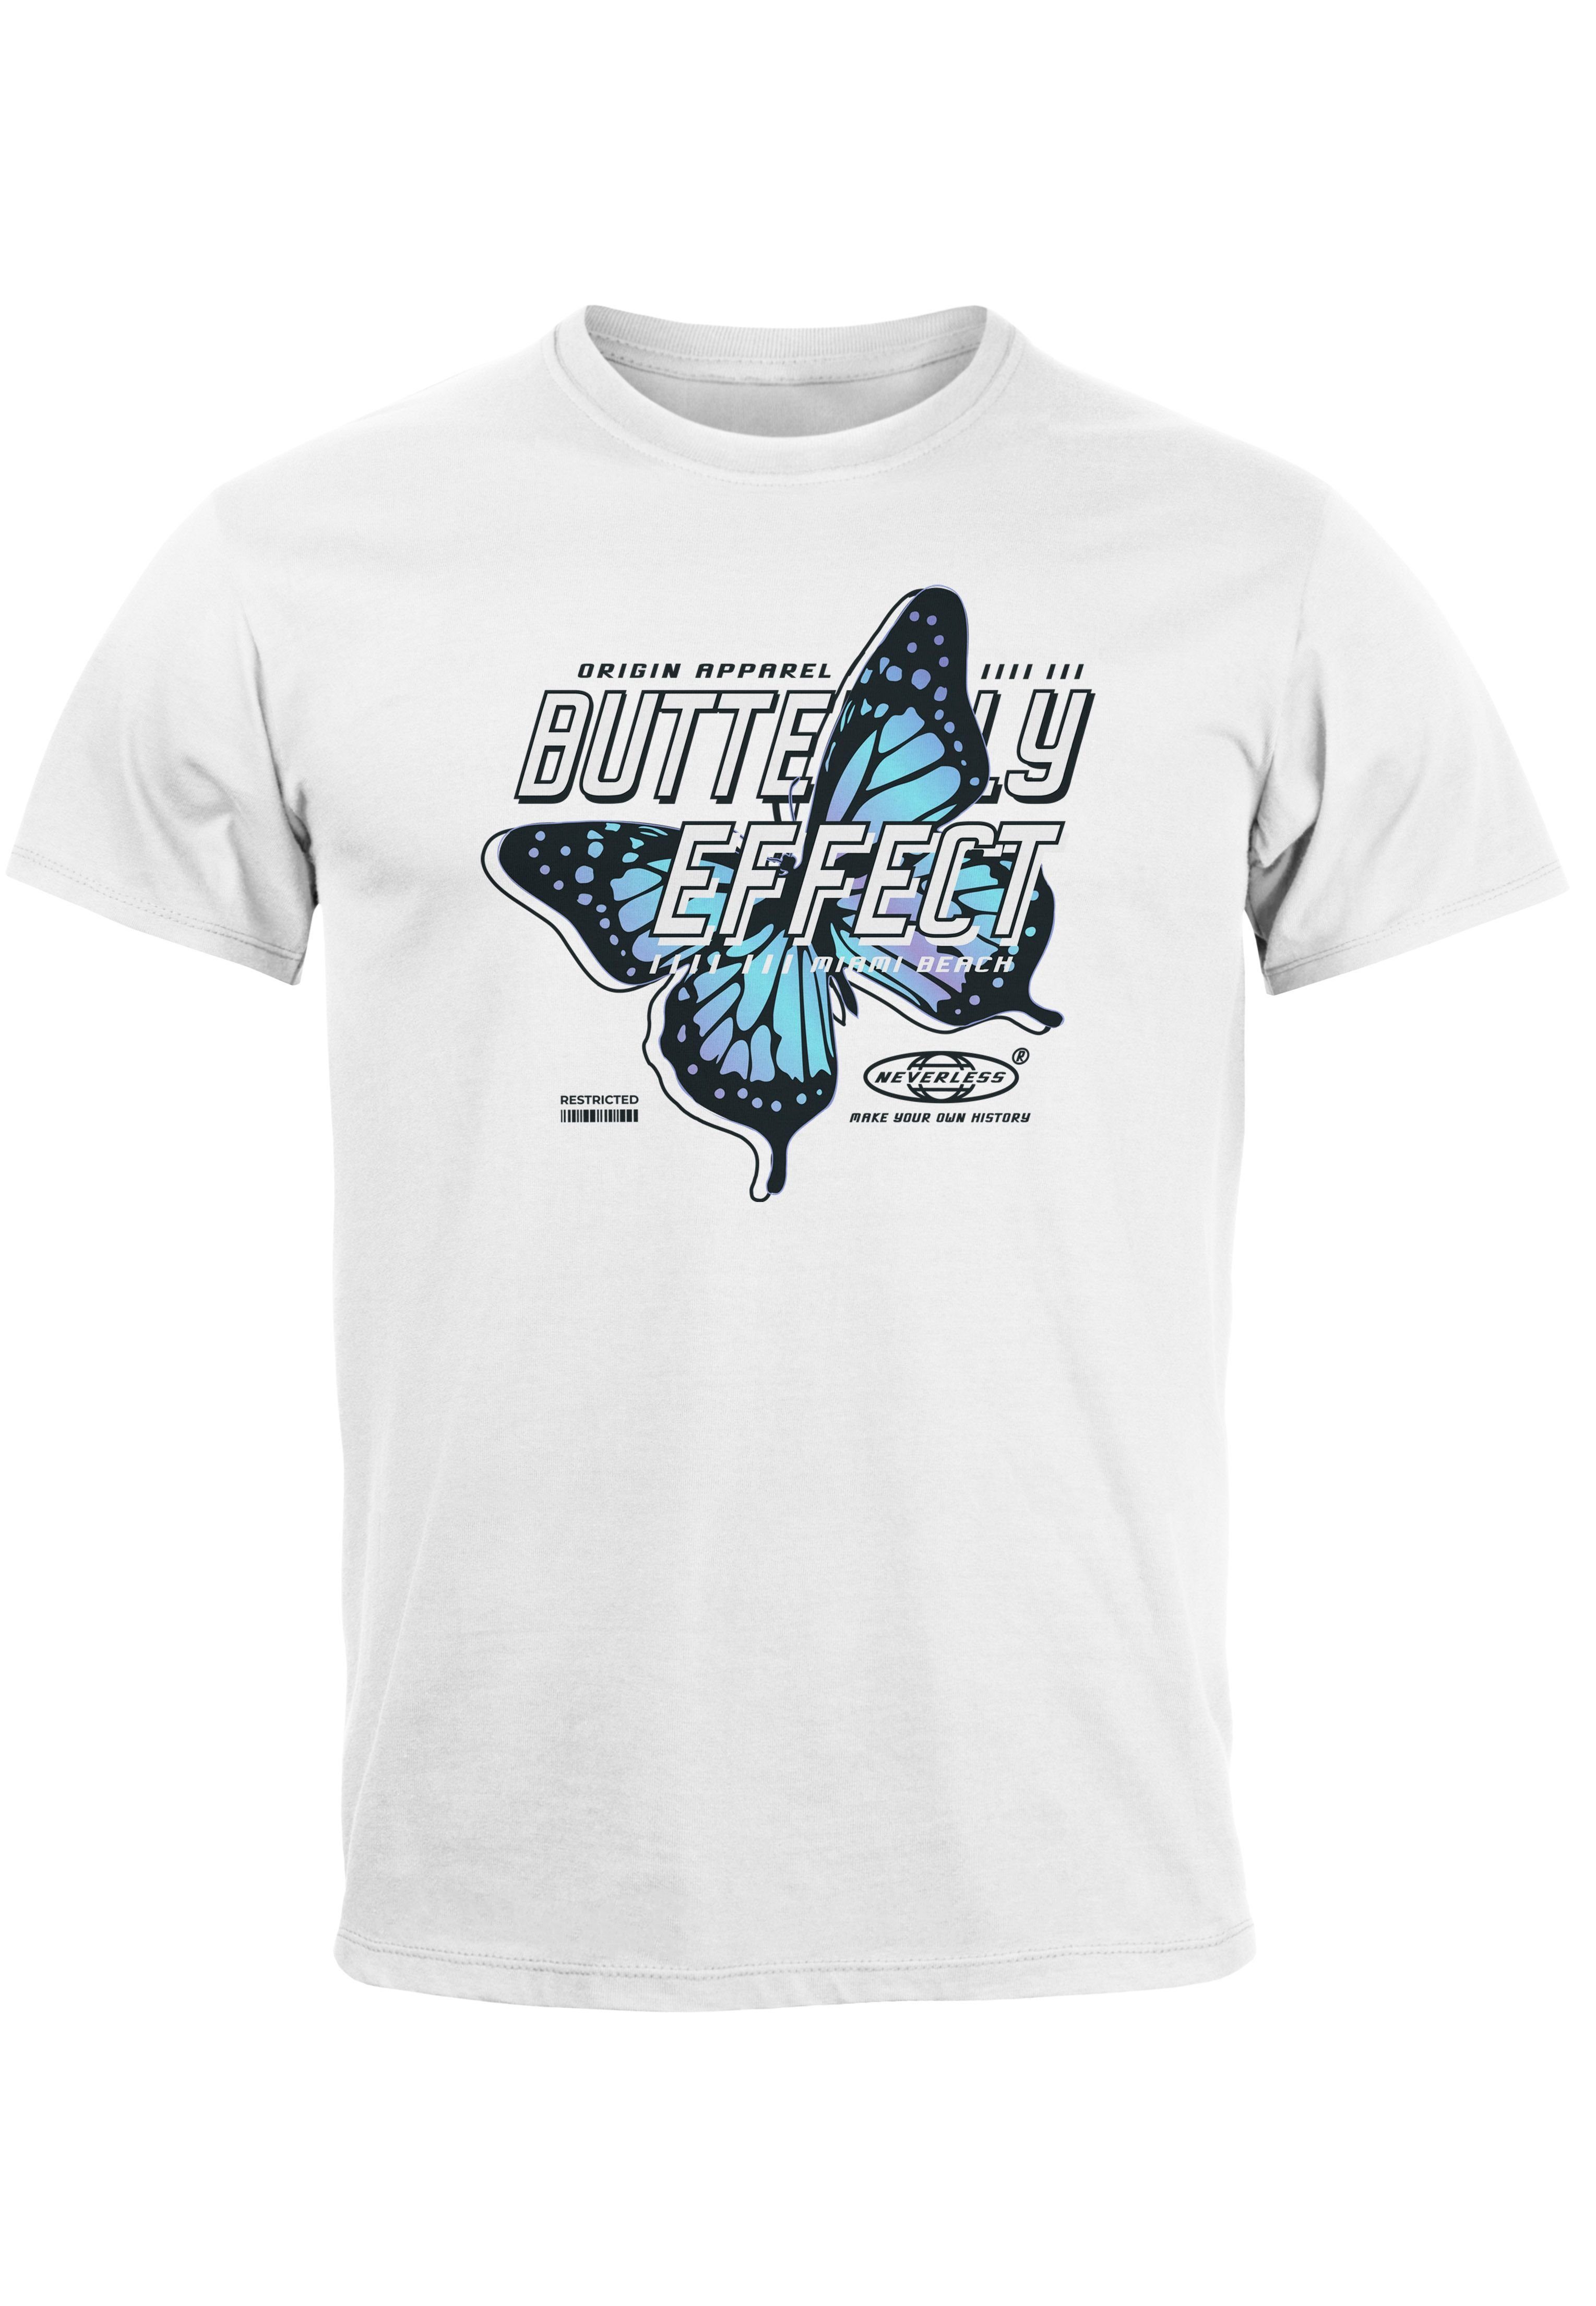 T-Shirt Schriftzug Schmetterling Neverless Effect Print-Shirt Herren Bedruckt mit Butterfly Fash Print weiß